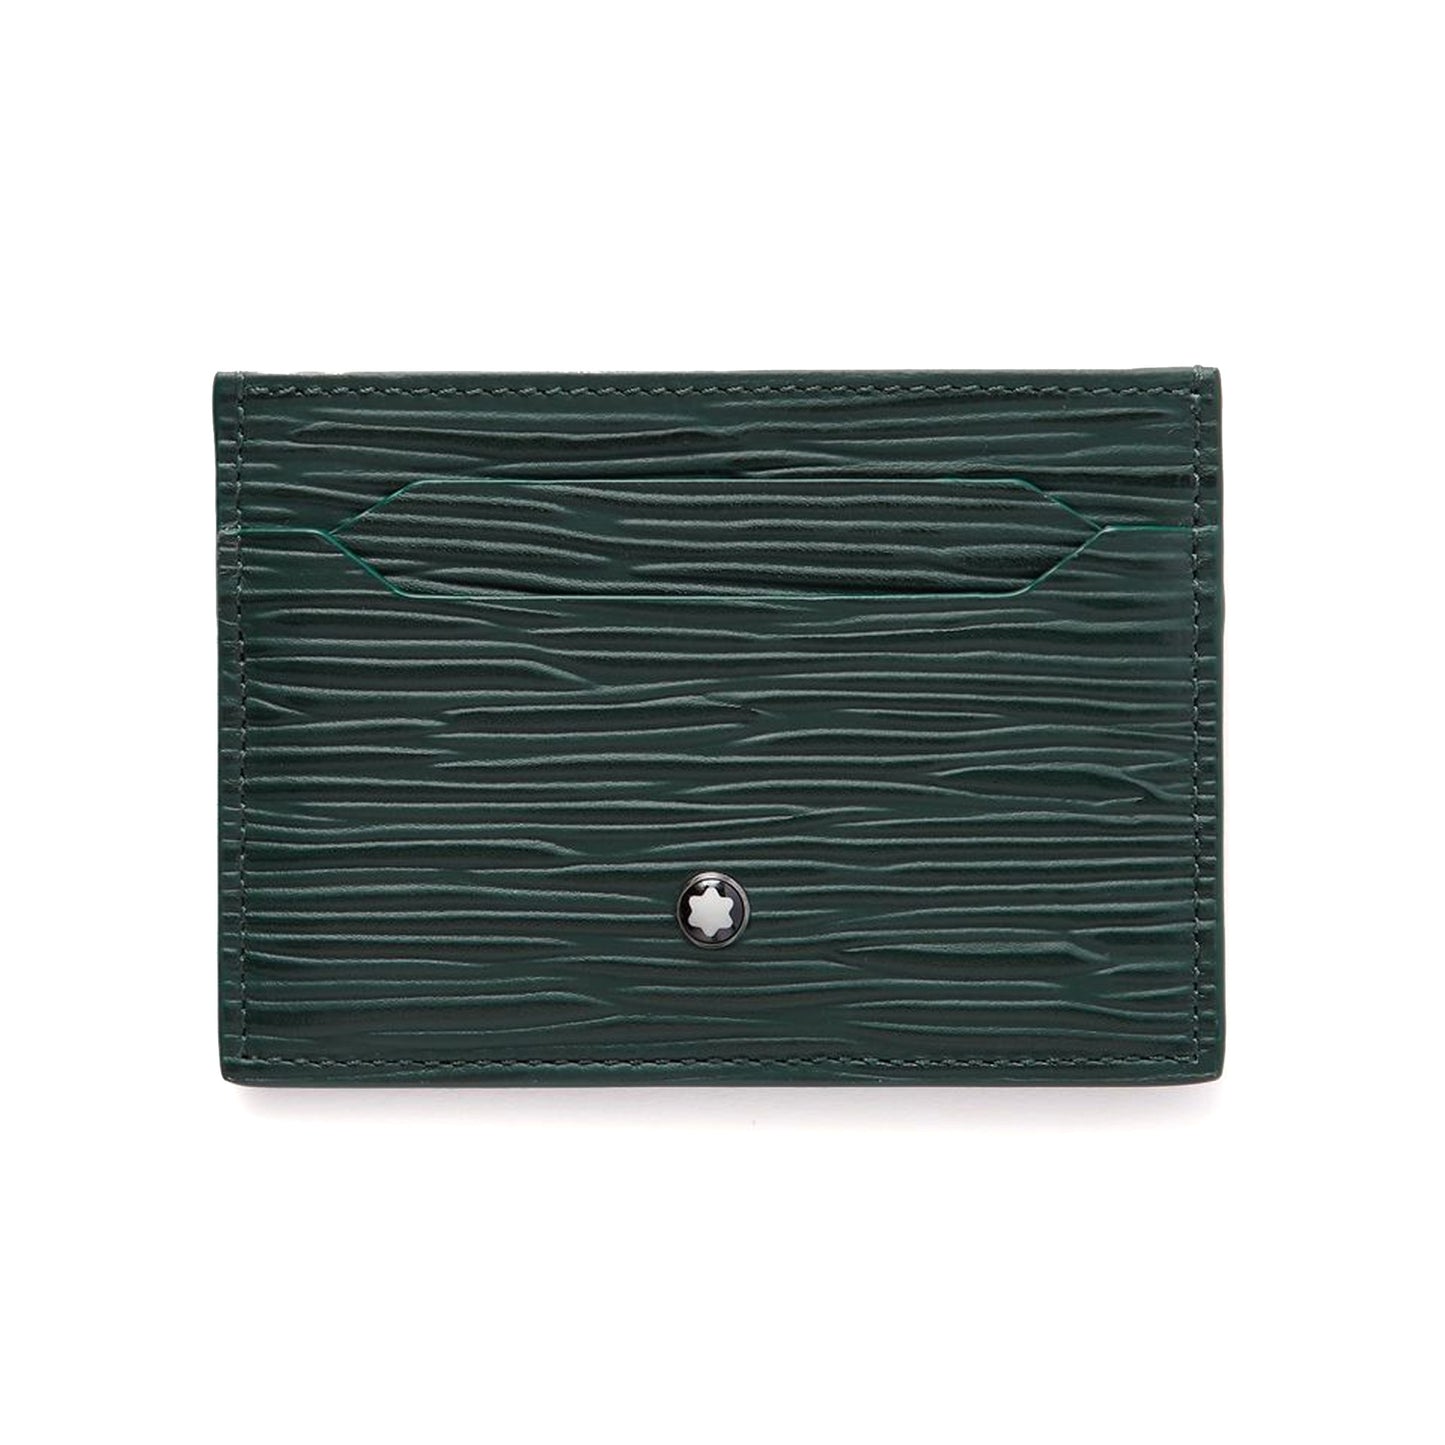 Meisterstück 4810 Textured-Leather Cardholder Green